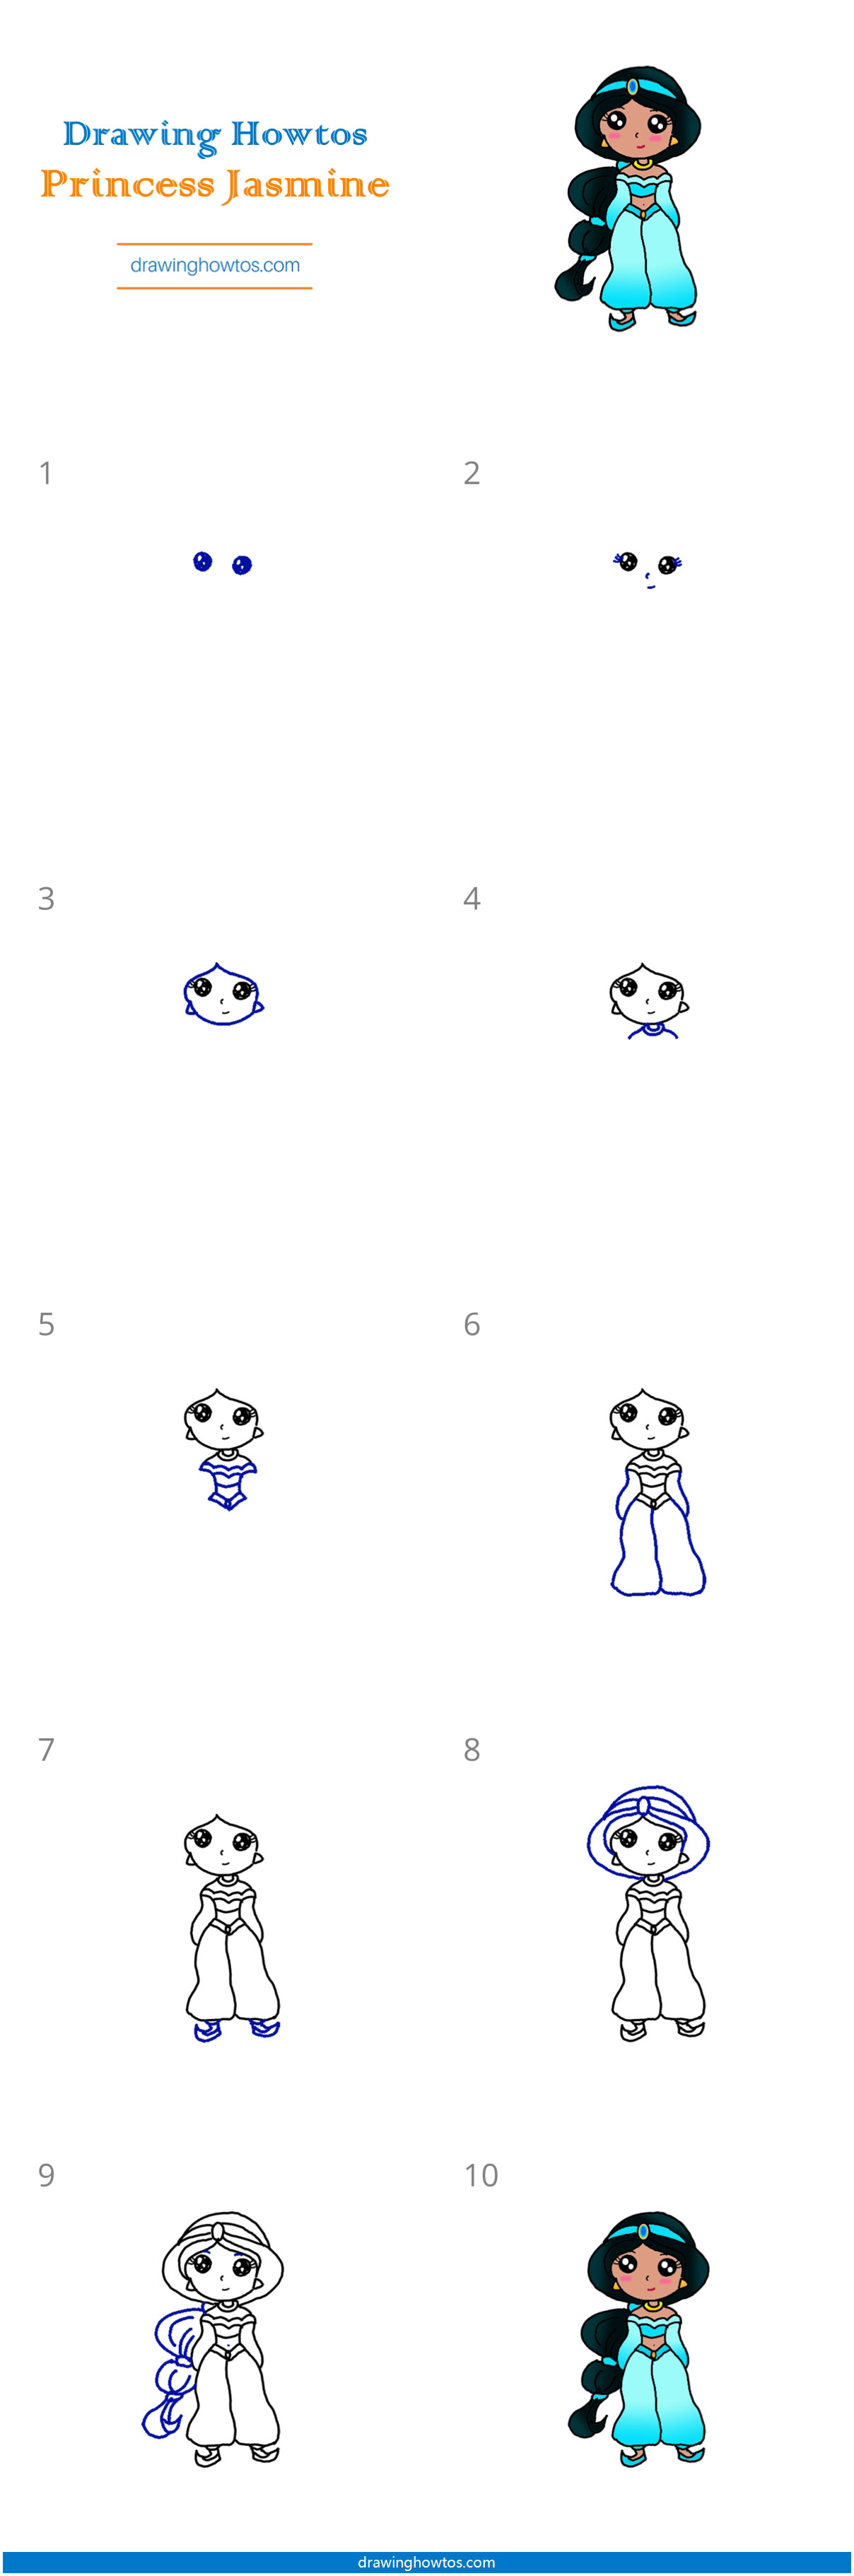 How to Draw Princess Jasmine Step by Step